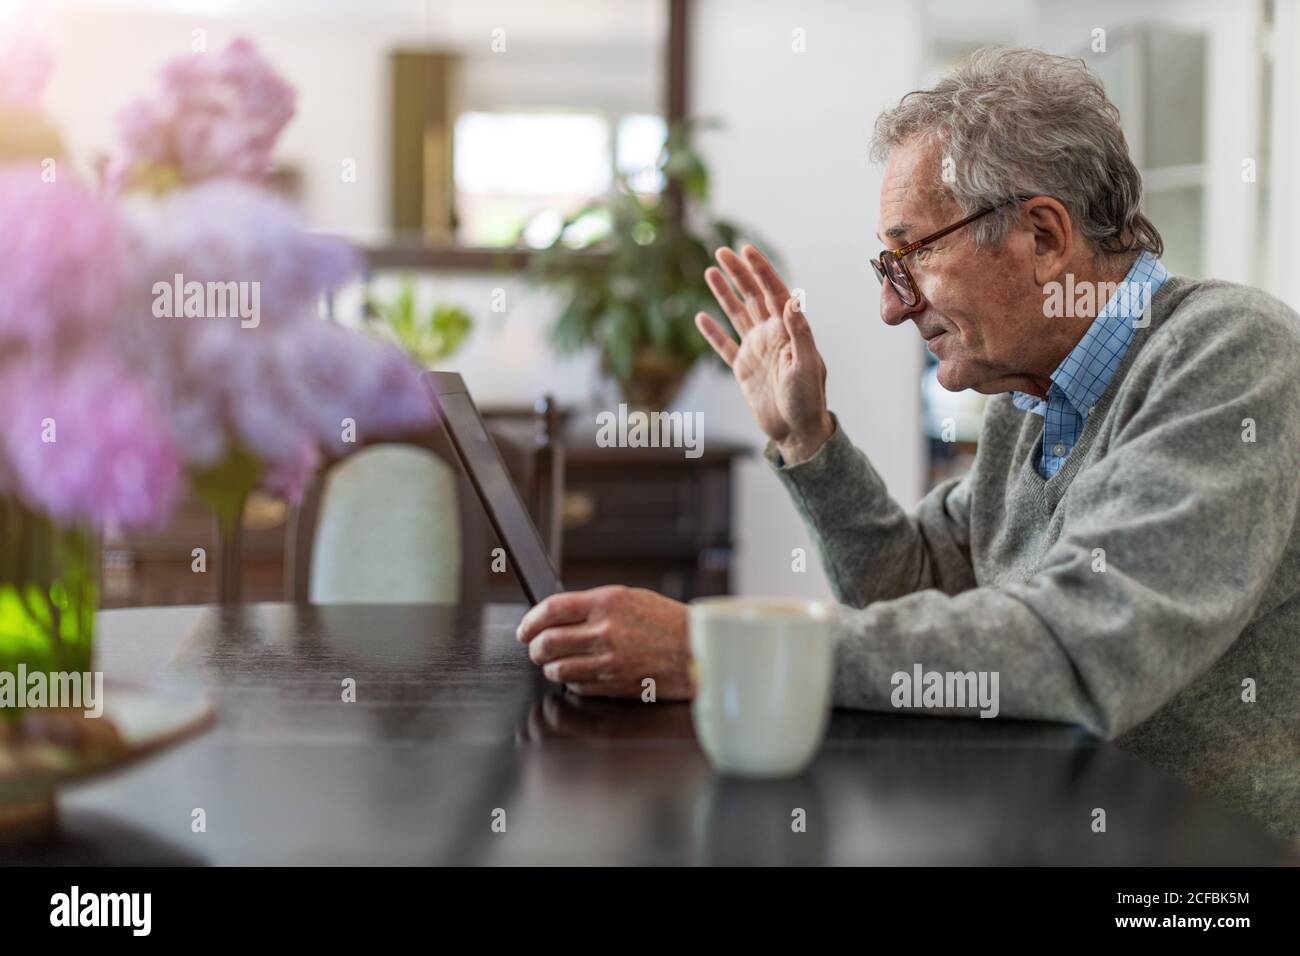 Senior man using laptop at home Stock Photo